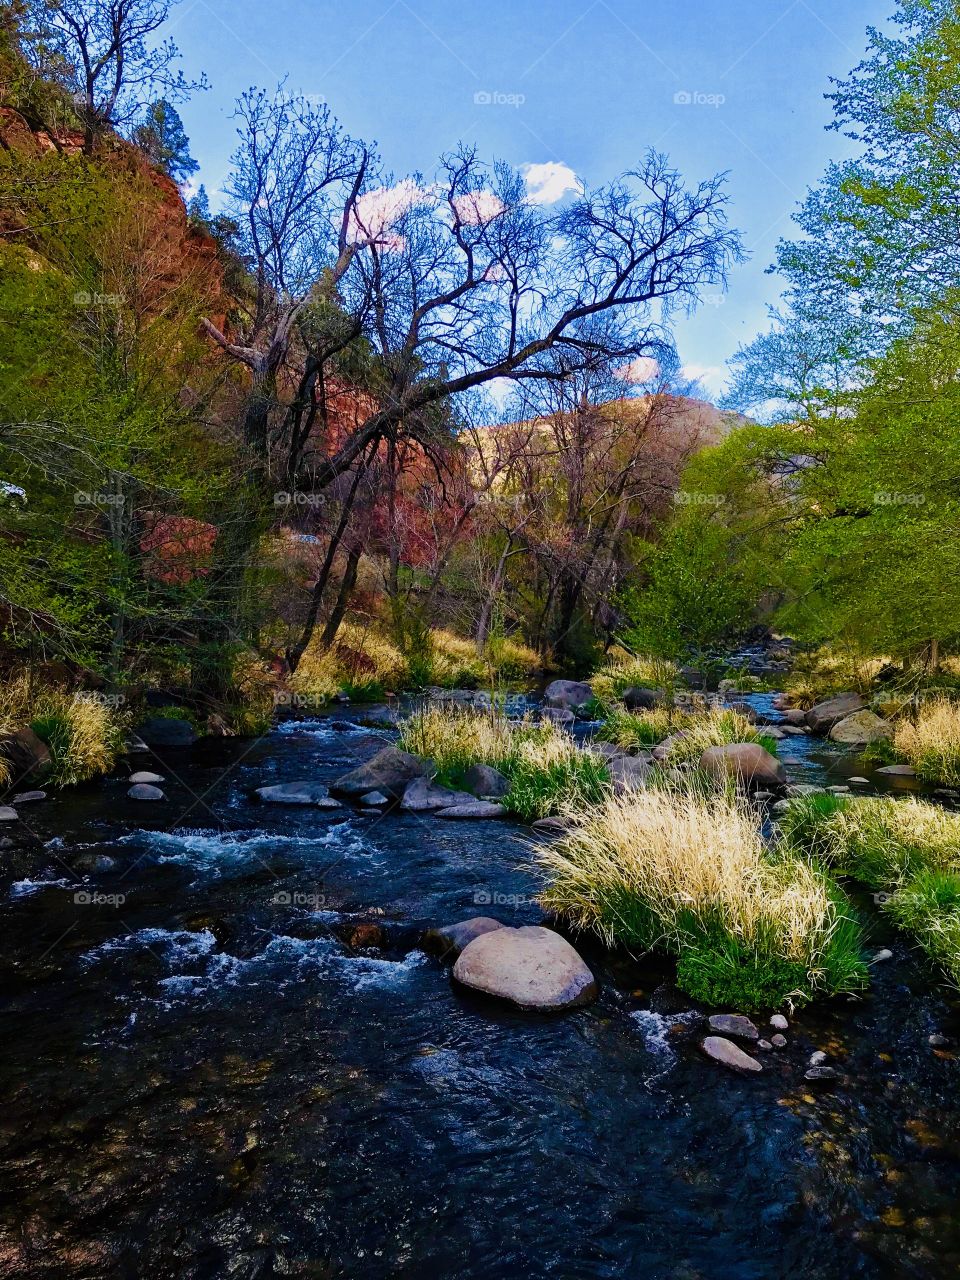 Oak Creek, Arizona 